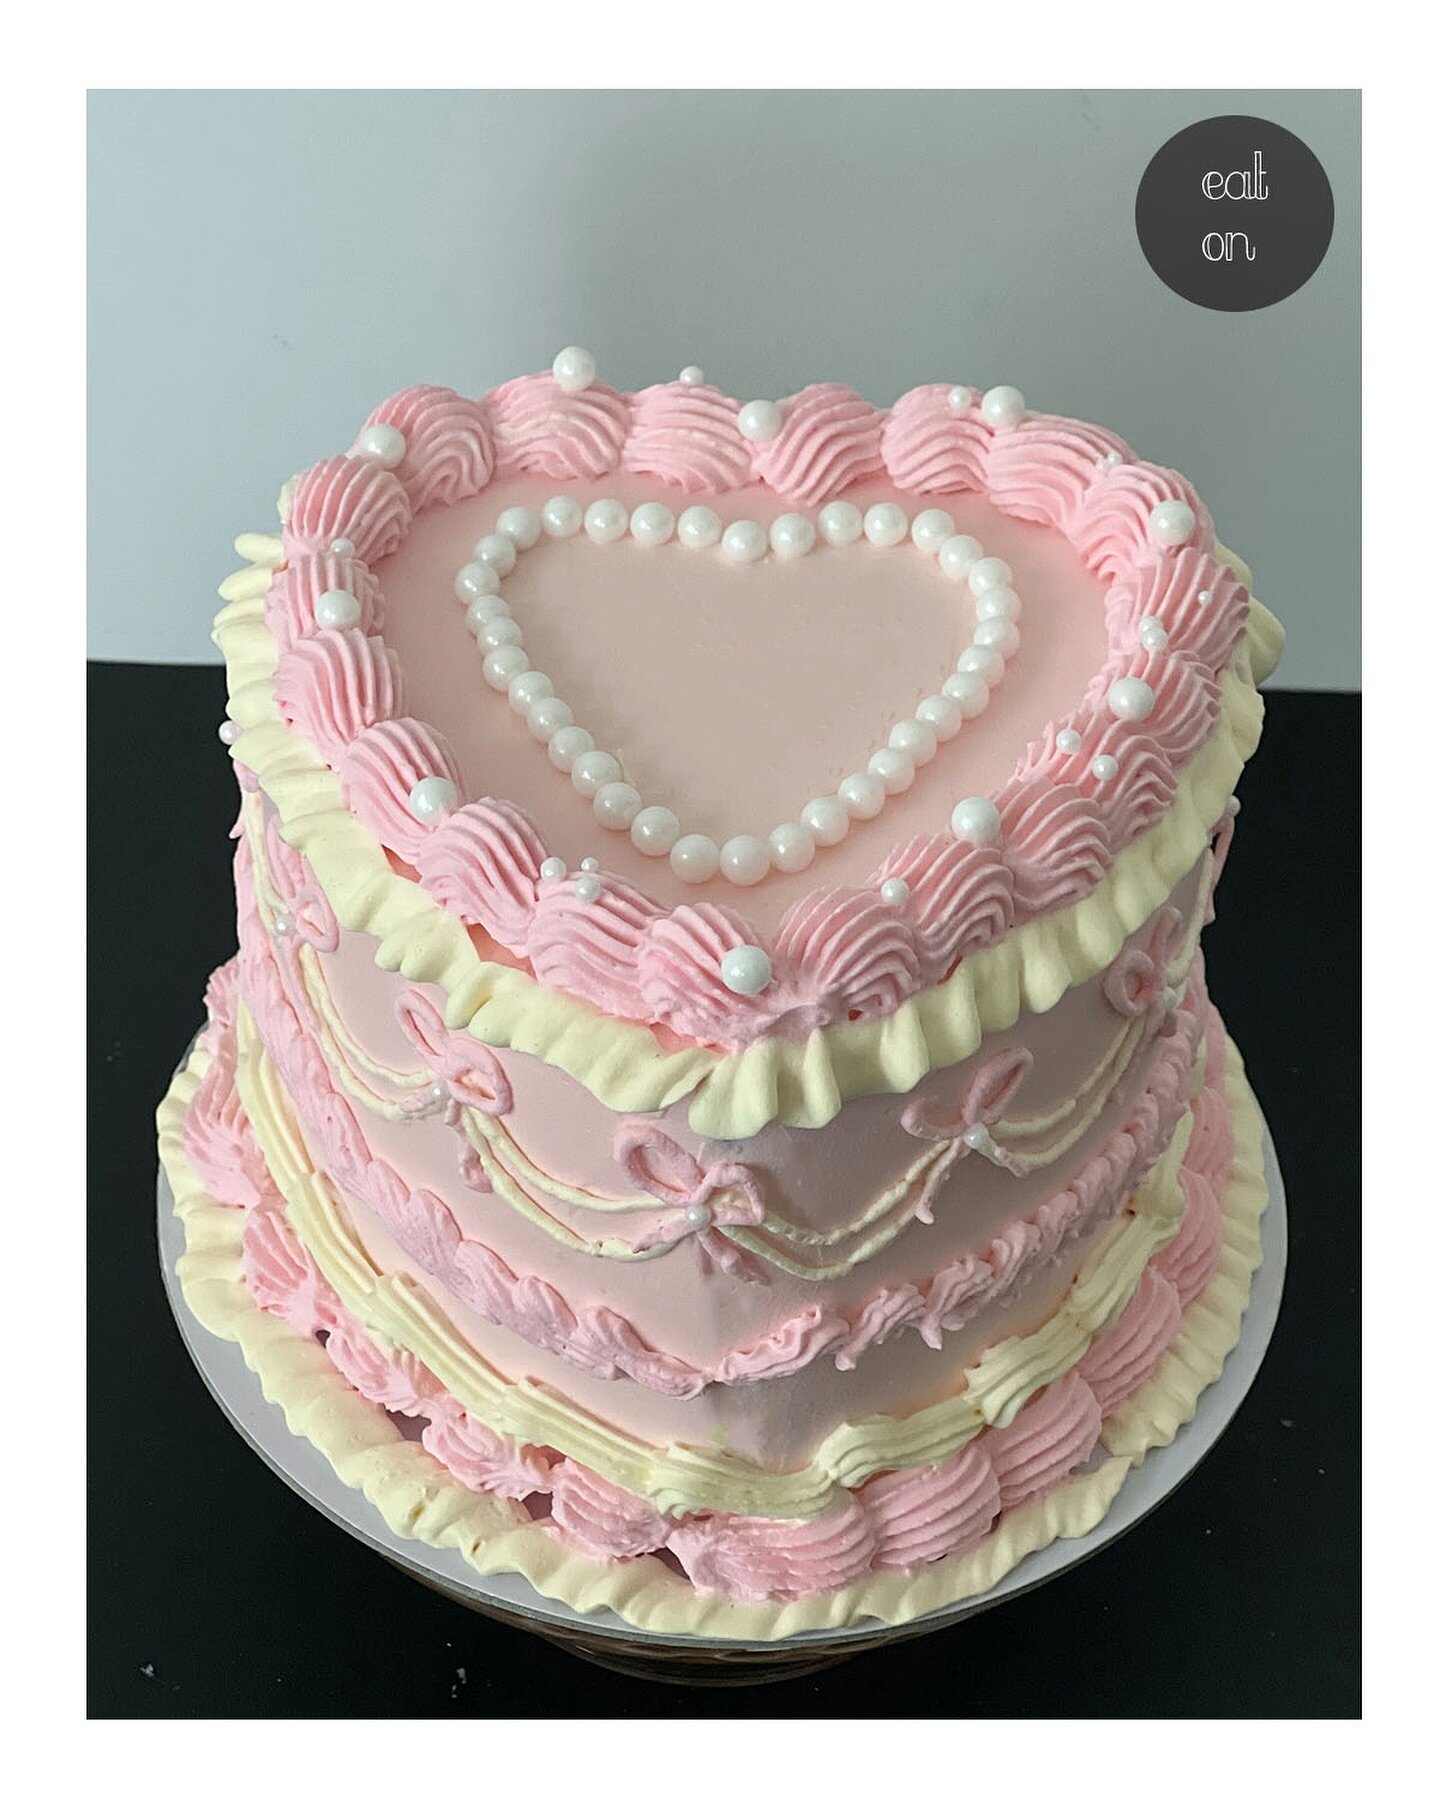 Happy Valentines Day 💗

#customcakes #customorder #heartcake  #valentinesday #birthdaycake #customcake #birthdaycakes #cakes #cakeart #peachtreecityfood #peachtreecitylife #peachtreecitybubble #supportsmallbusiness #smallbusiness #smallbusinessowner